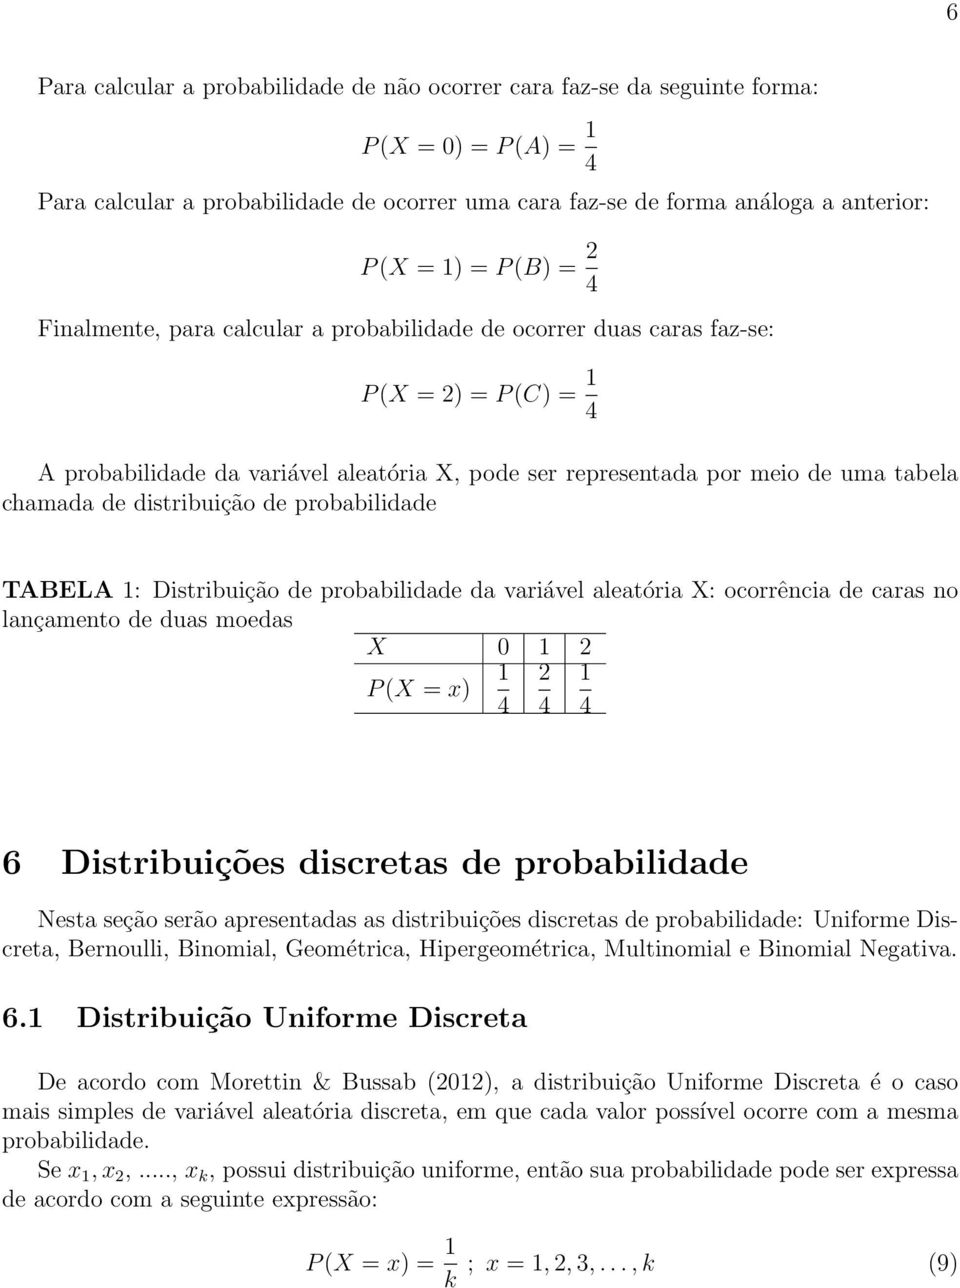 chamada de distribuição de probabilidade TABELA 1: Distribuição de probabilidade da variável aleatória X: ocorrência de caras no lançamento de duas moedas X 0 1 2 P (X = x) 1 4 2 4 1 4 6